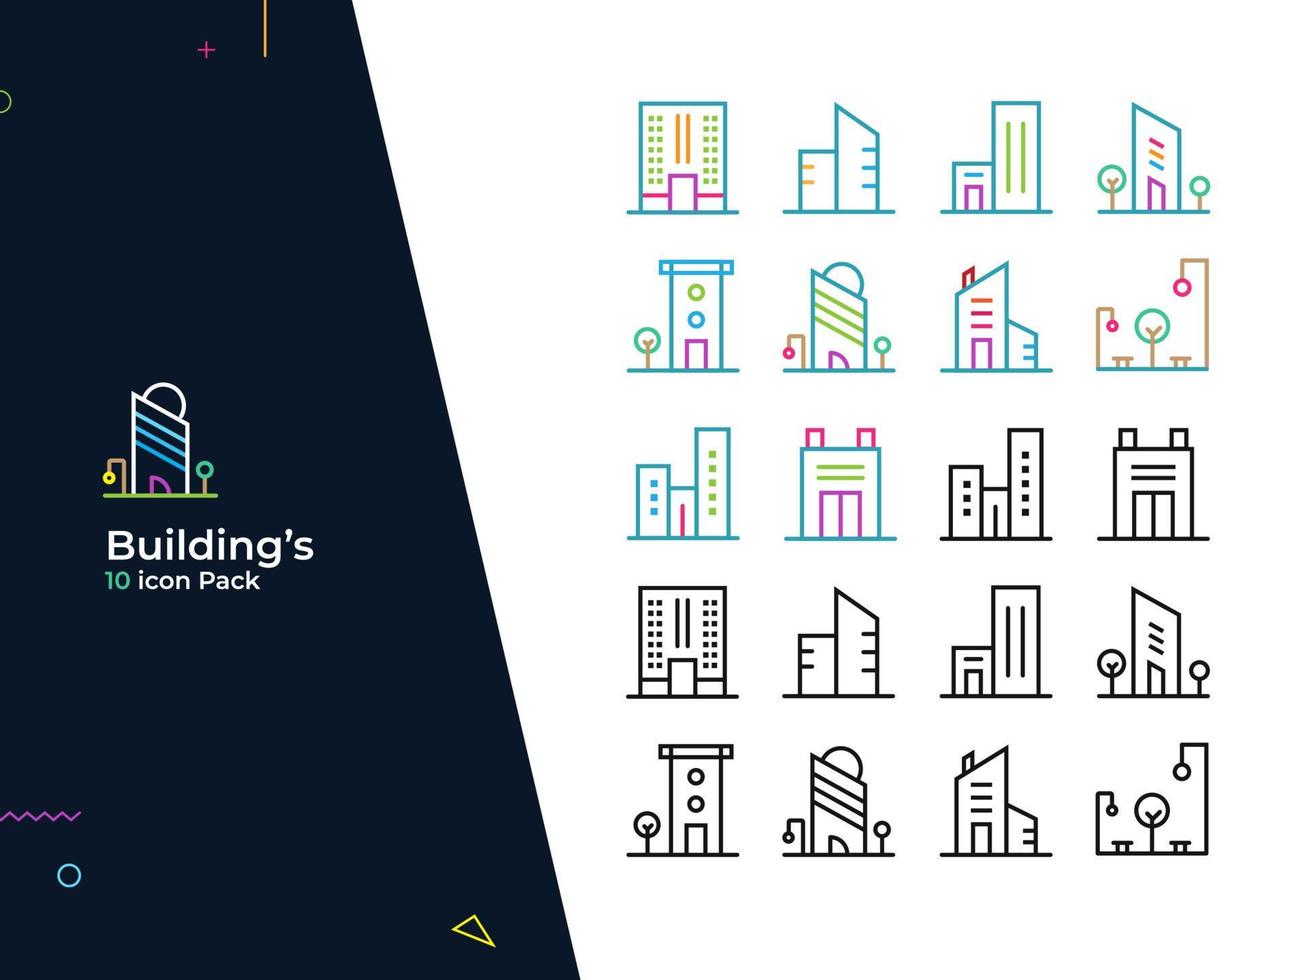 gebouwen - 10 icon pack. geschikt voor website, mobiele app, poster, presentatie, flyer, printen, social media, etc vector